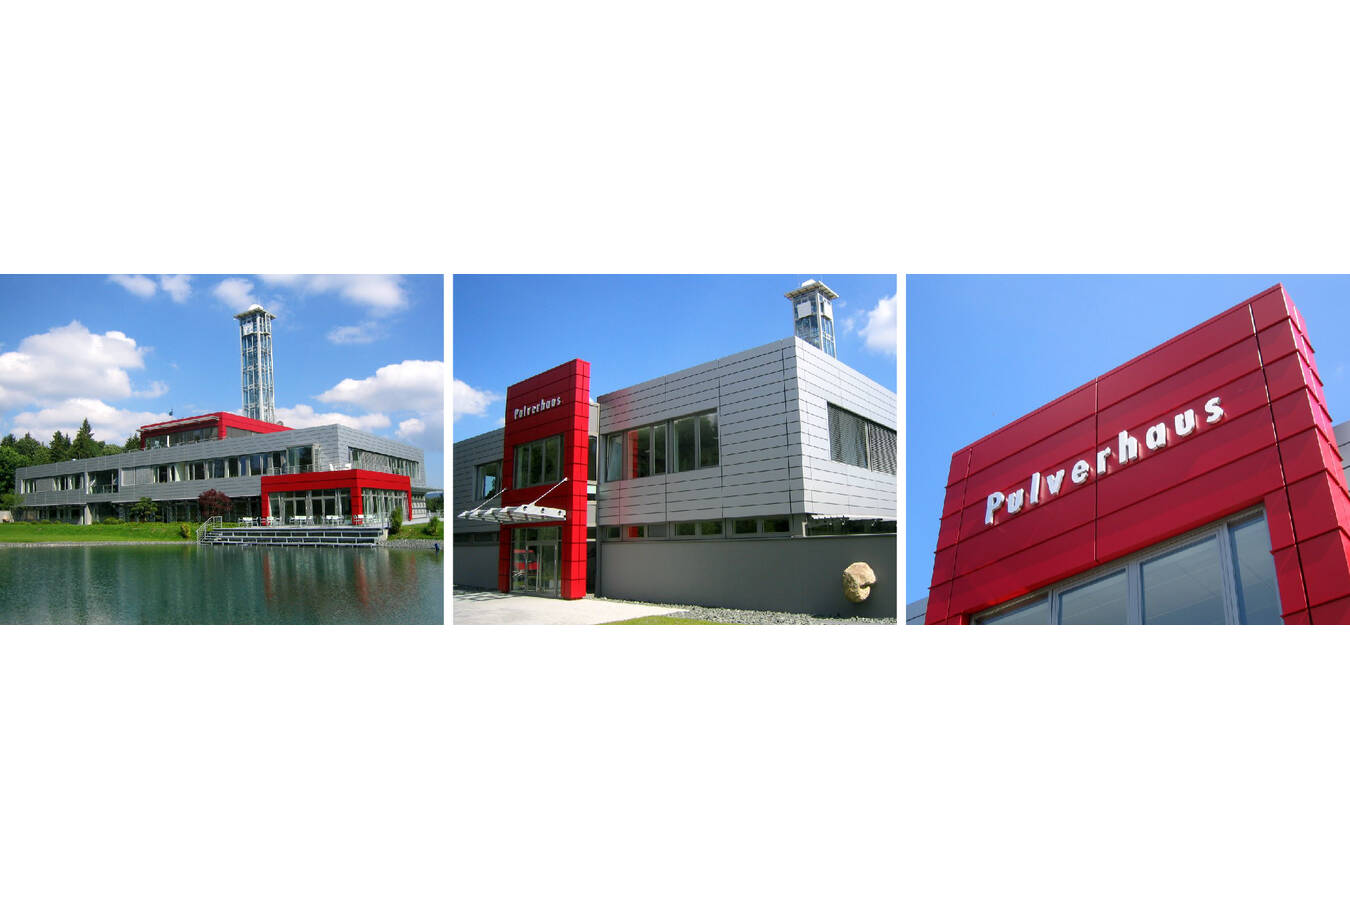 Sympatec GmbH sucht Bürokauffrau/-mann (m/w/d)  Für unsere Firmenzentrale „Pulverhaus“ in Clausthal-Zellerfeld suchen wir zum nächstmöglichen Zeitpunkt eine*n Bürokauffrau/-mann (m/w/d) für Verkaufsadministration und Labor